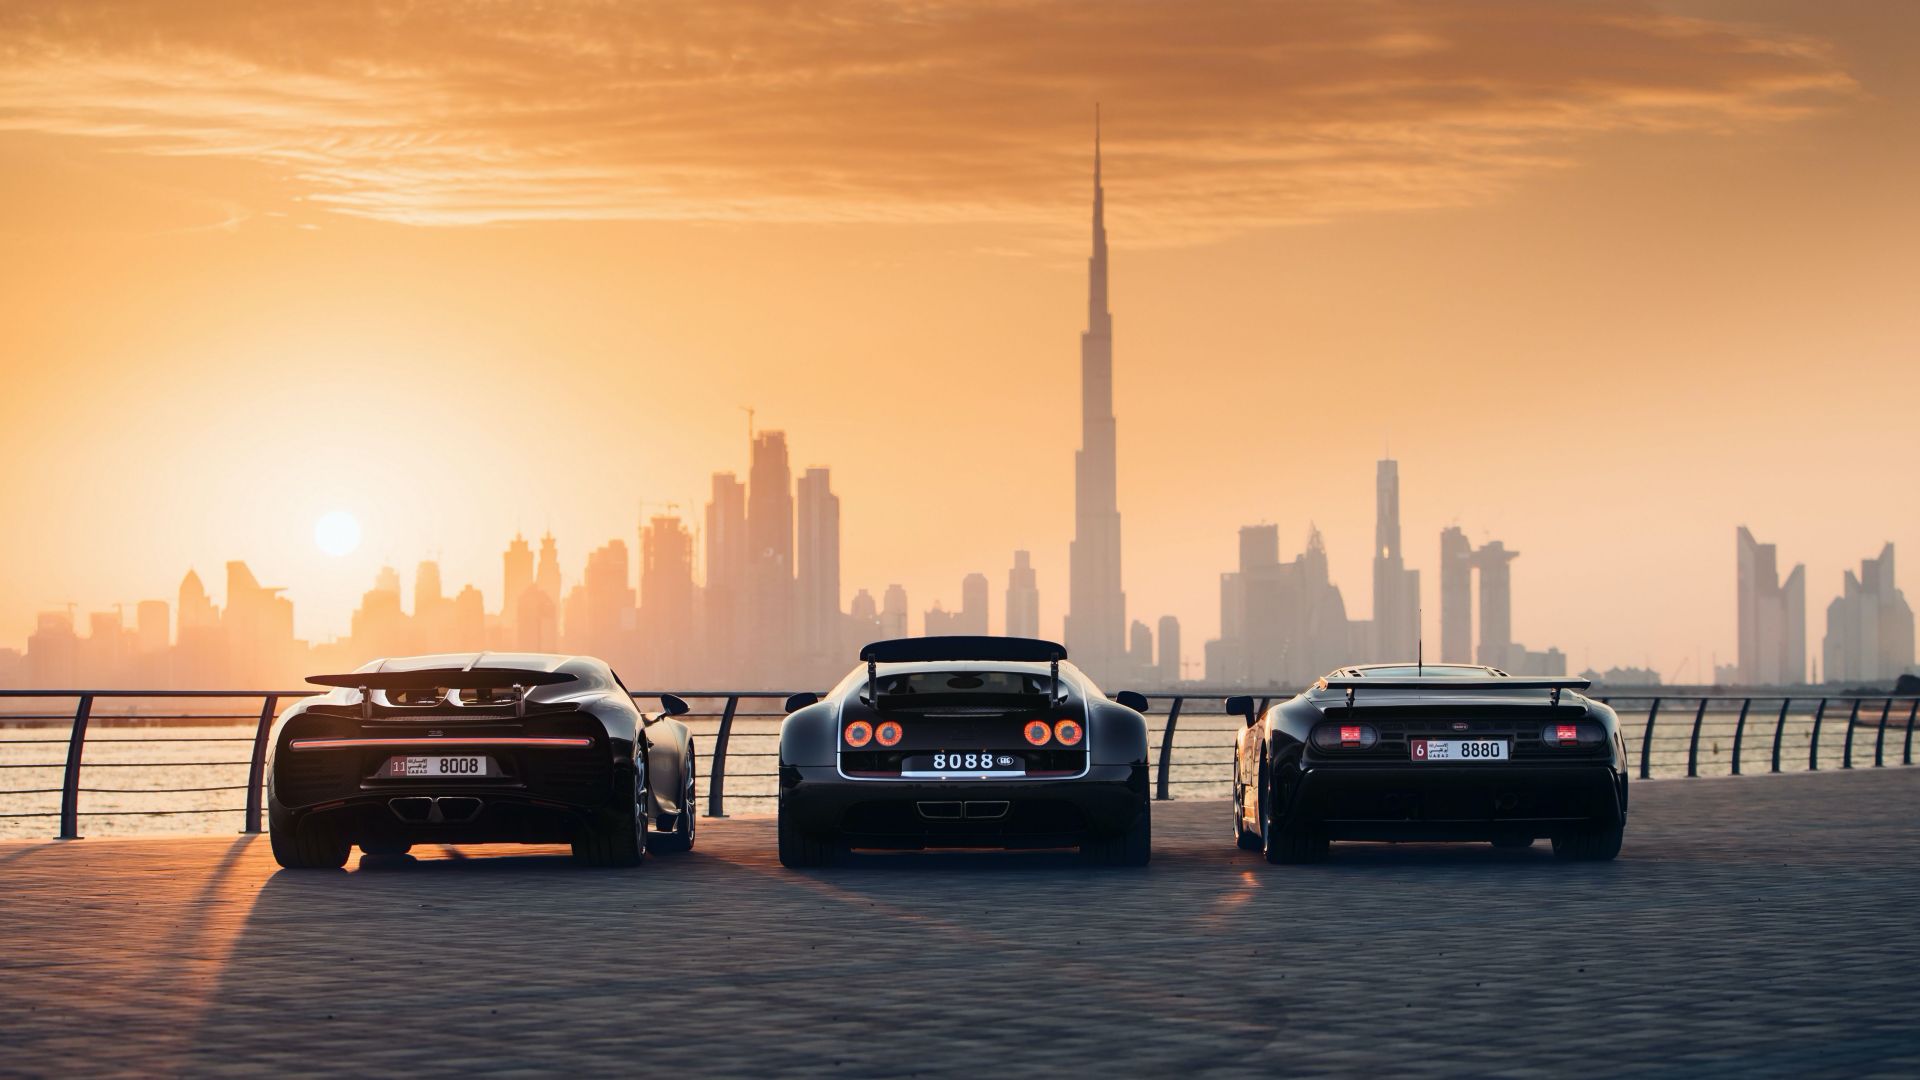 بيع لوحة تراخيص سيارات في دبي بسعر 35.6 مليون ريال! 1